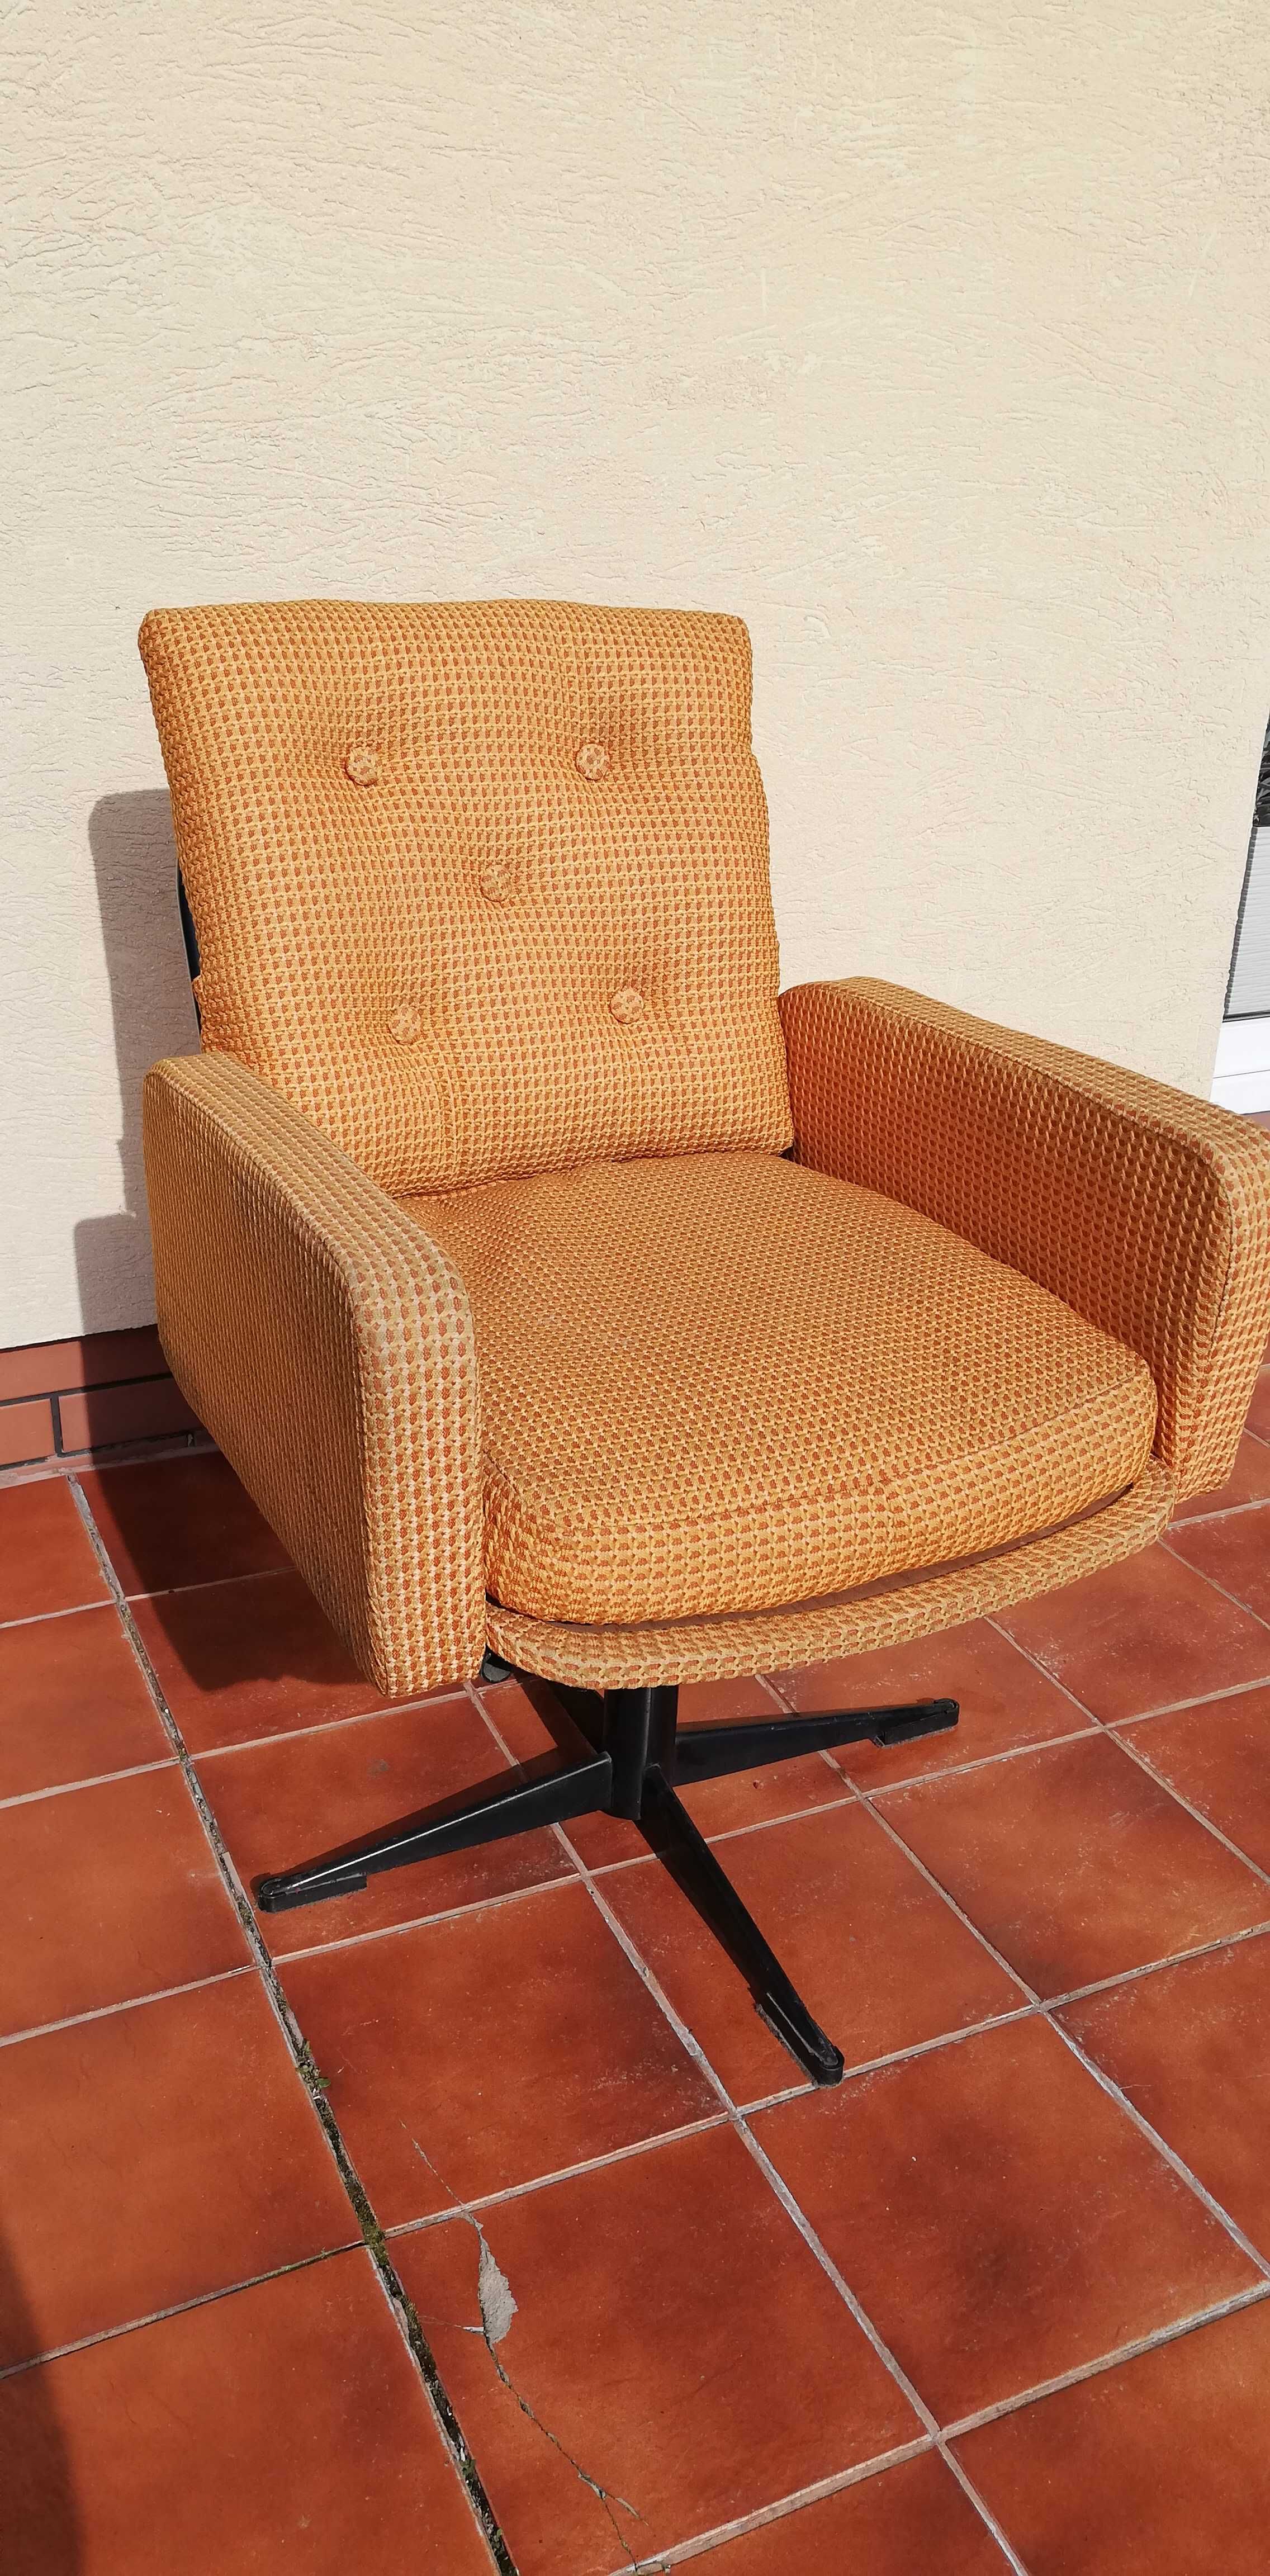 Fotel PRL unikat kręcony krzesło metalowy ciekawy